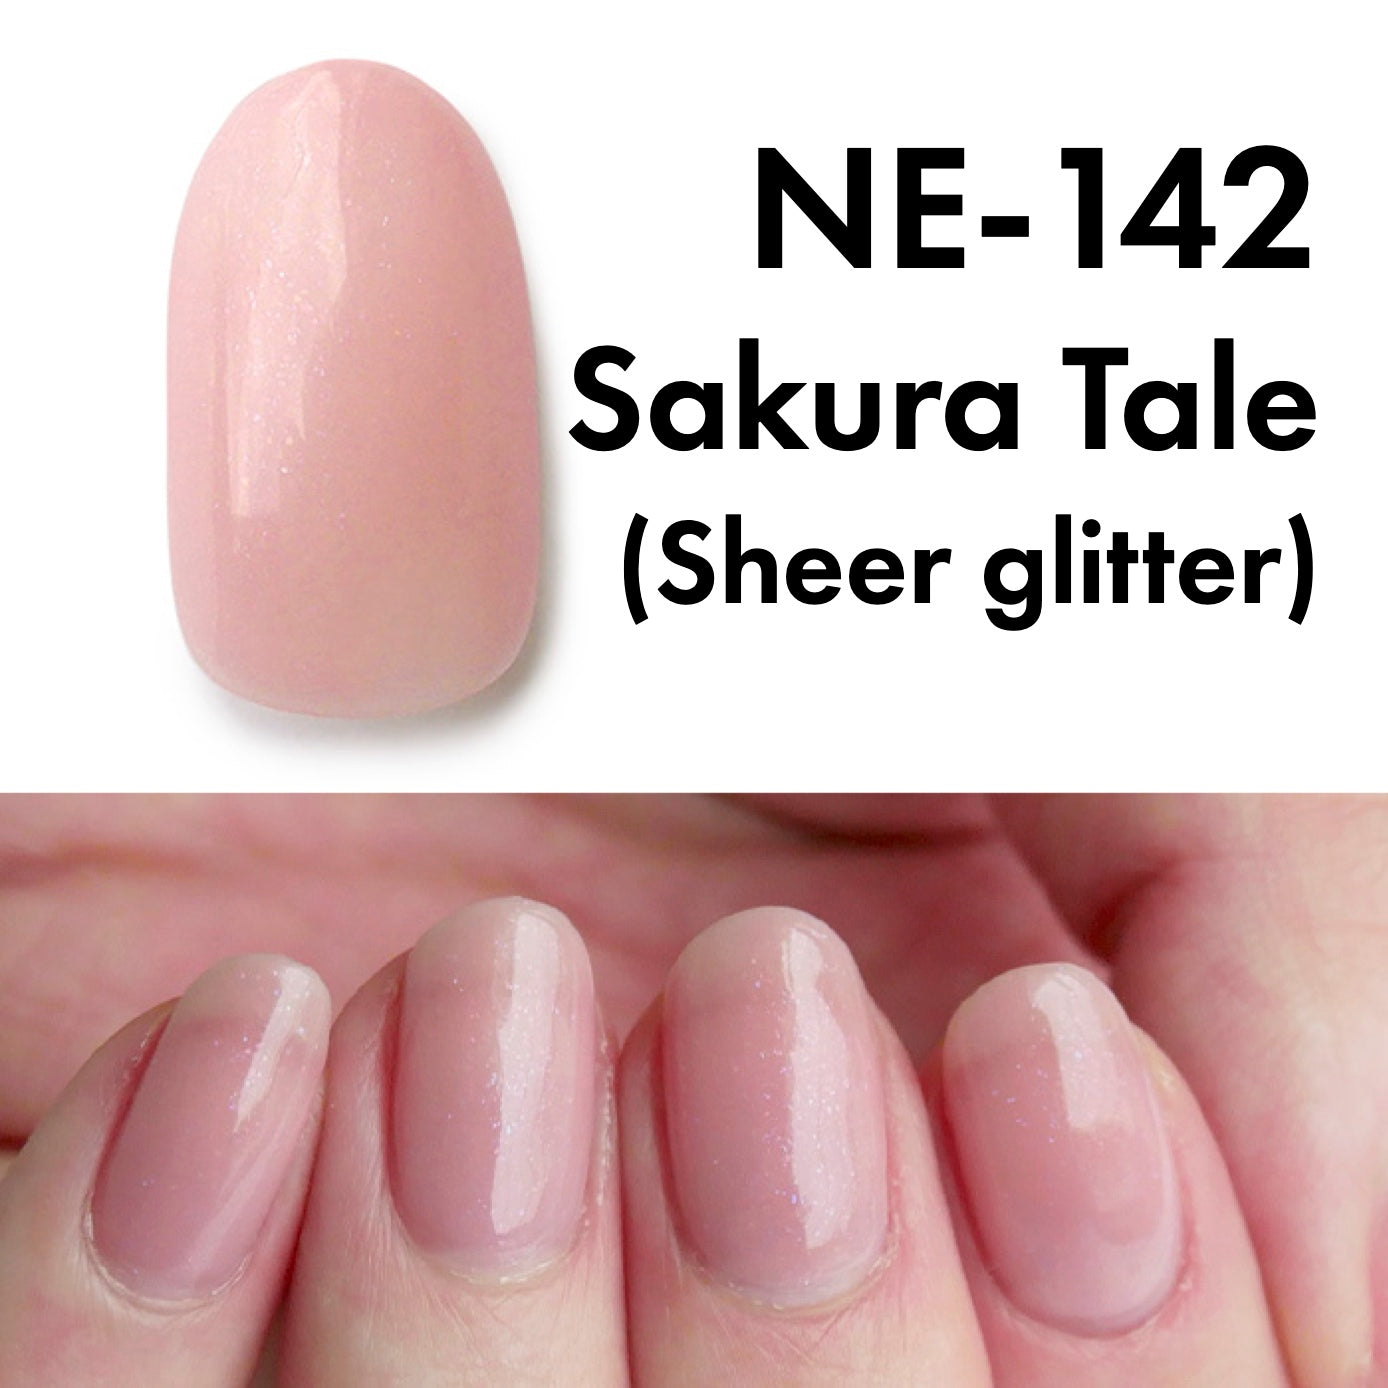 Gel Polish NE-142 "Sakura Tale"